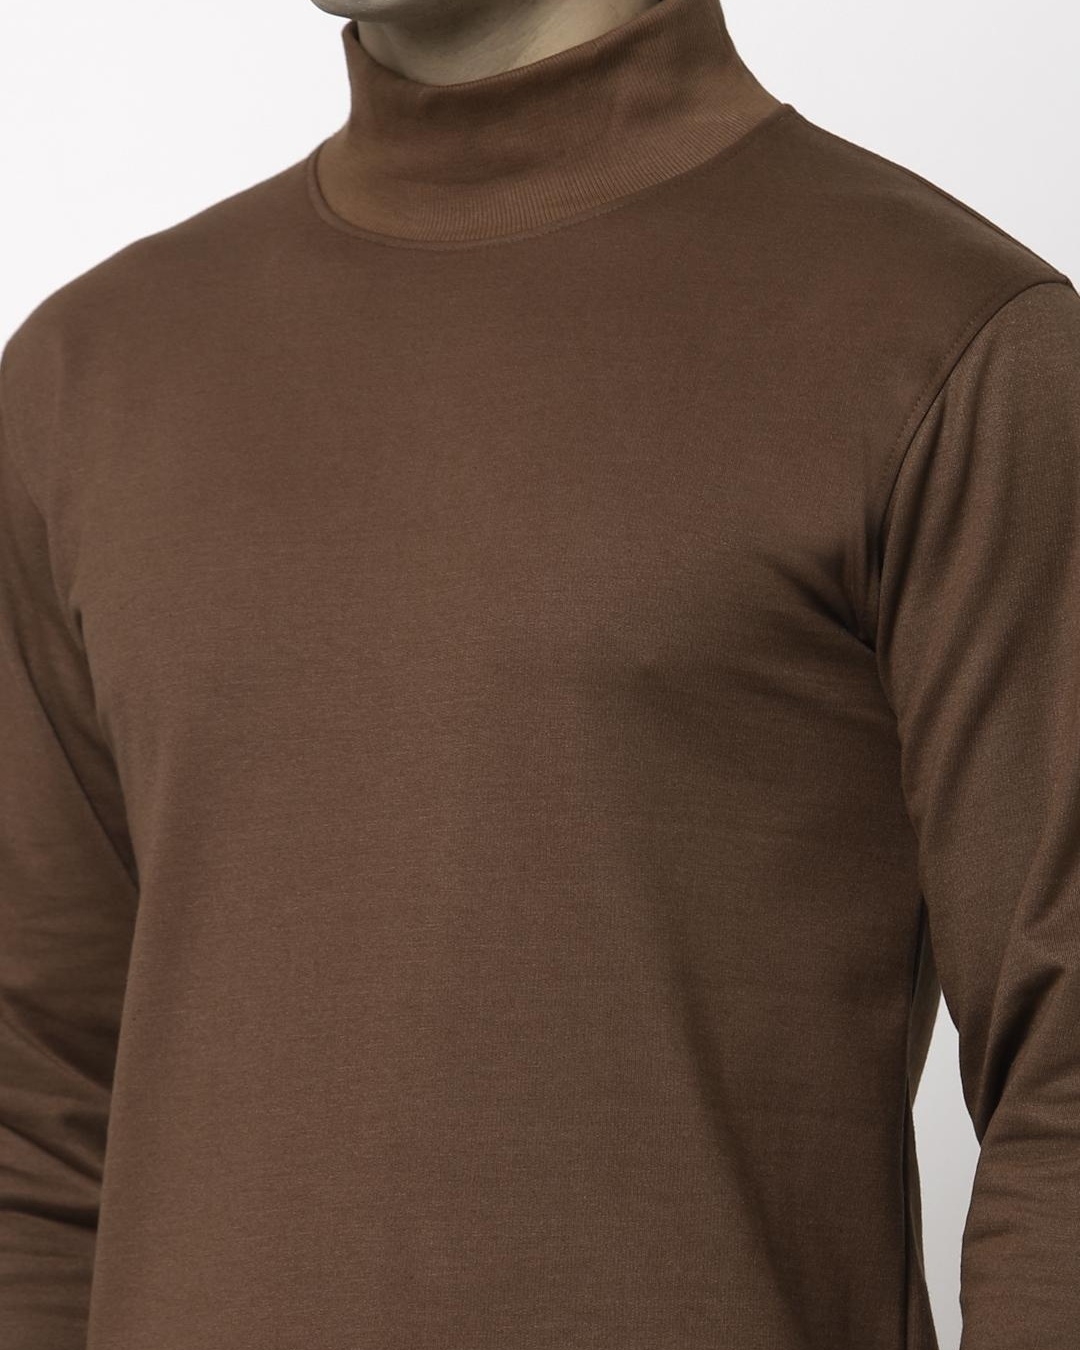 Shop Men's Brown Sweatshirt